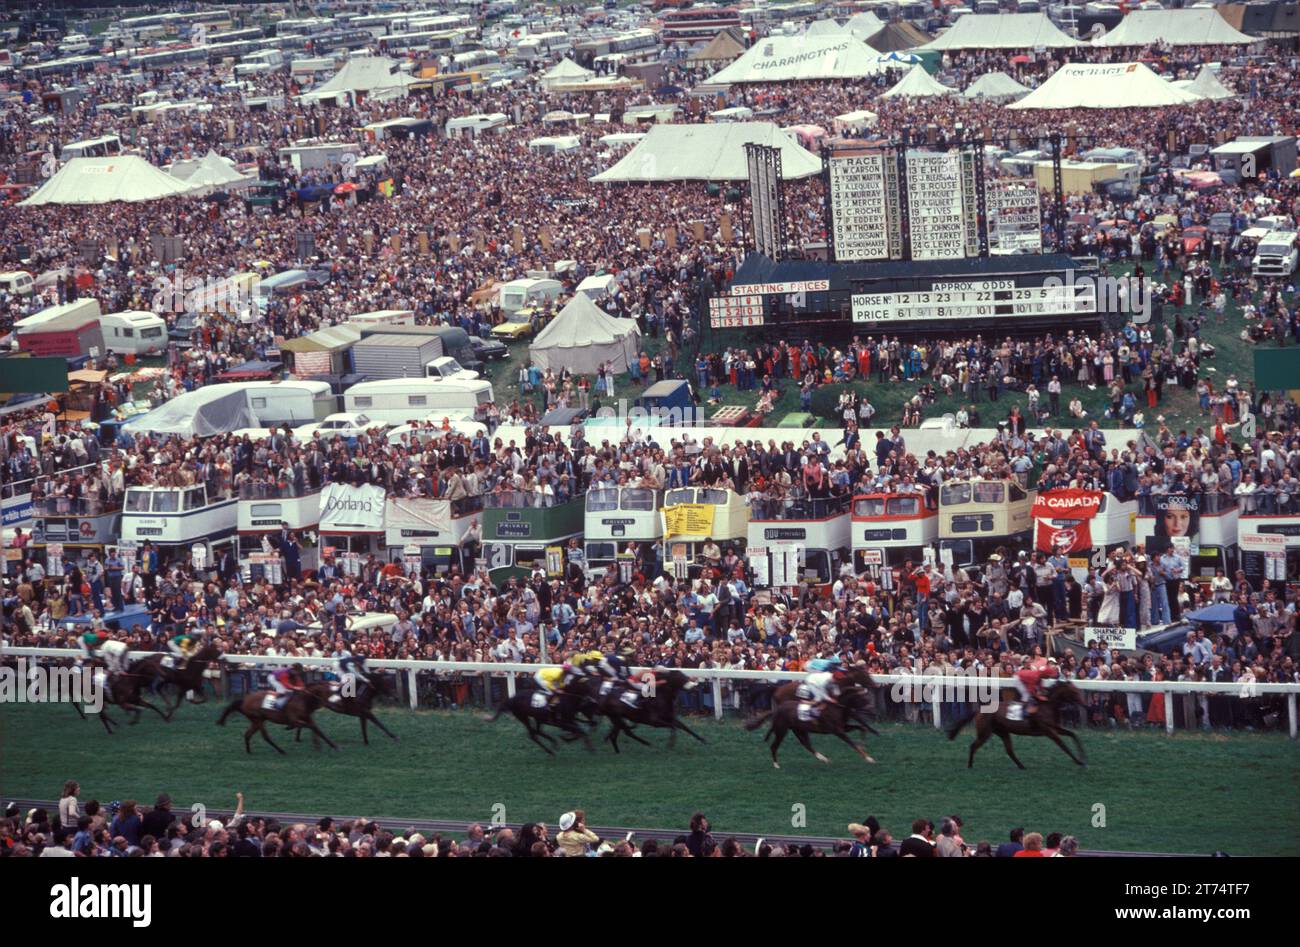 Derby Day, Epsom Downs, la corsa di cavalli Derby. Il cavallo che arriva a finire la folla di spettatori "on the Hill", sul lato più economico del circuito da corsa senza pagare. Epsom Downs, Surrey, Inghilterra giugno 1985 1980s UK HOMER SYKES Foto Stock